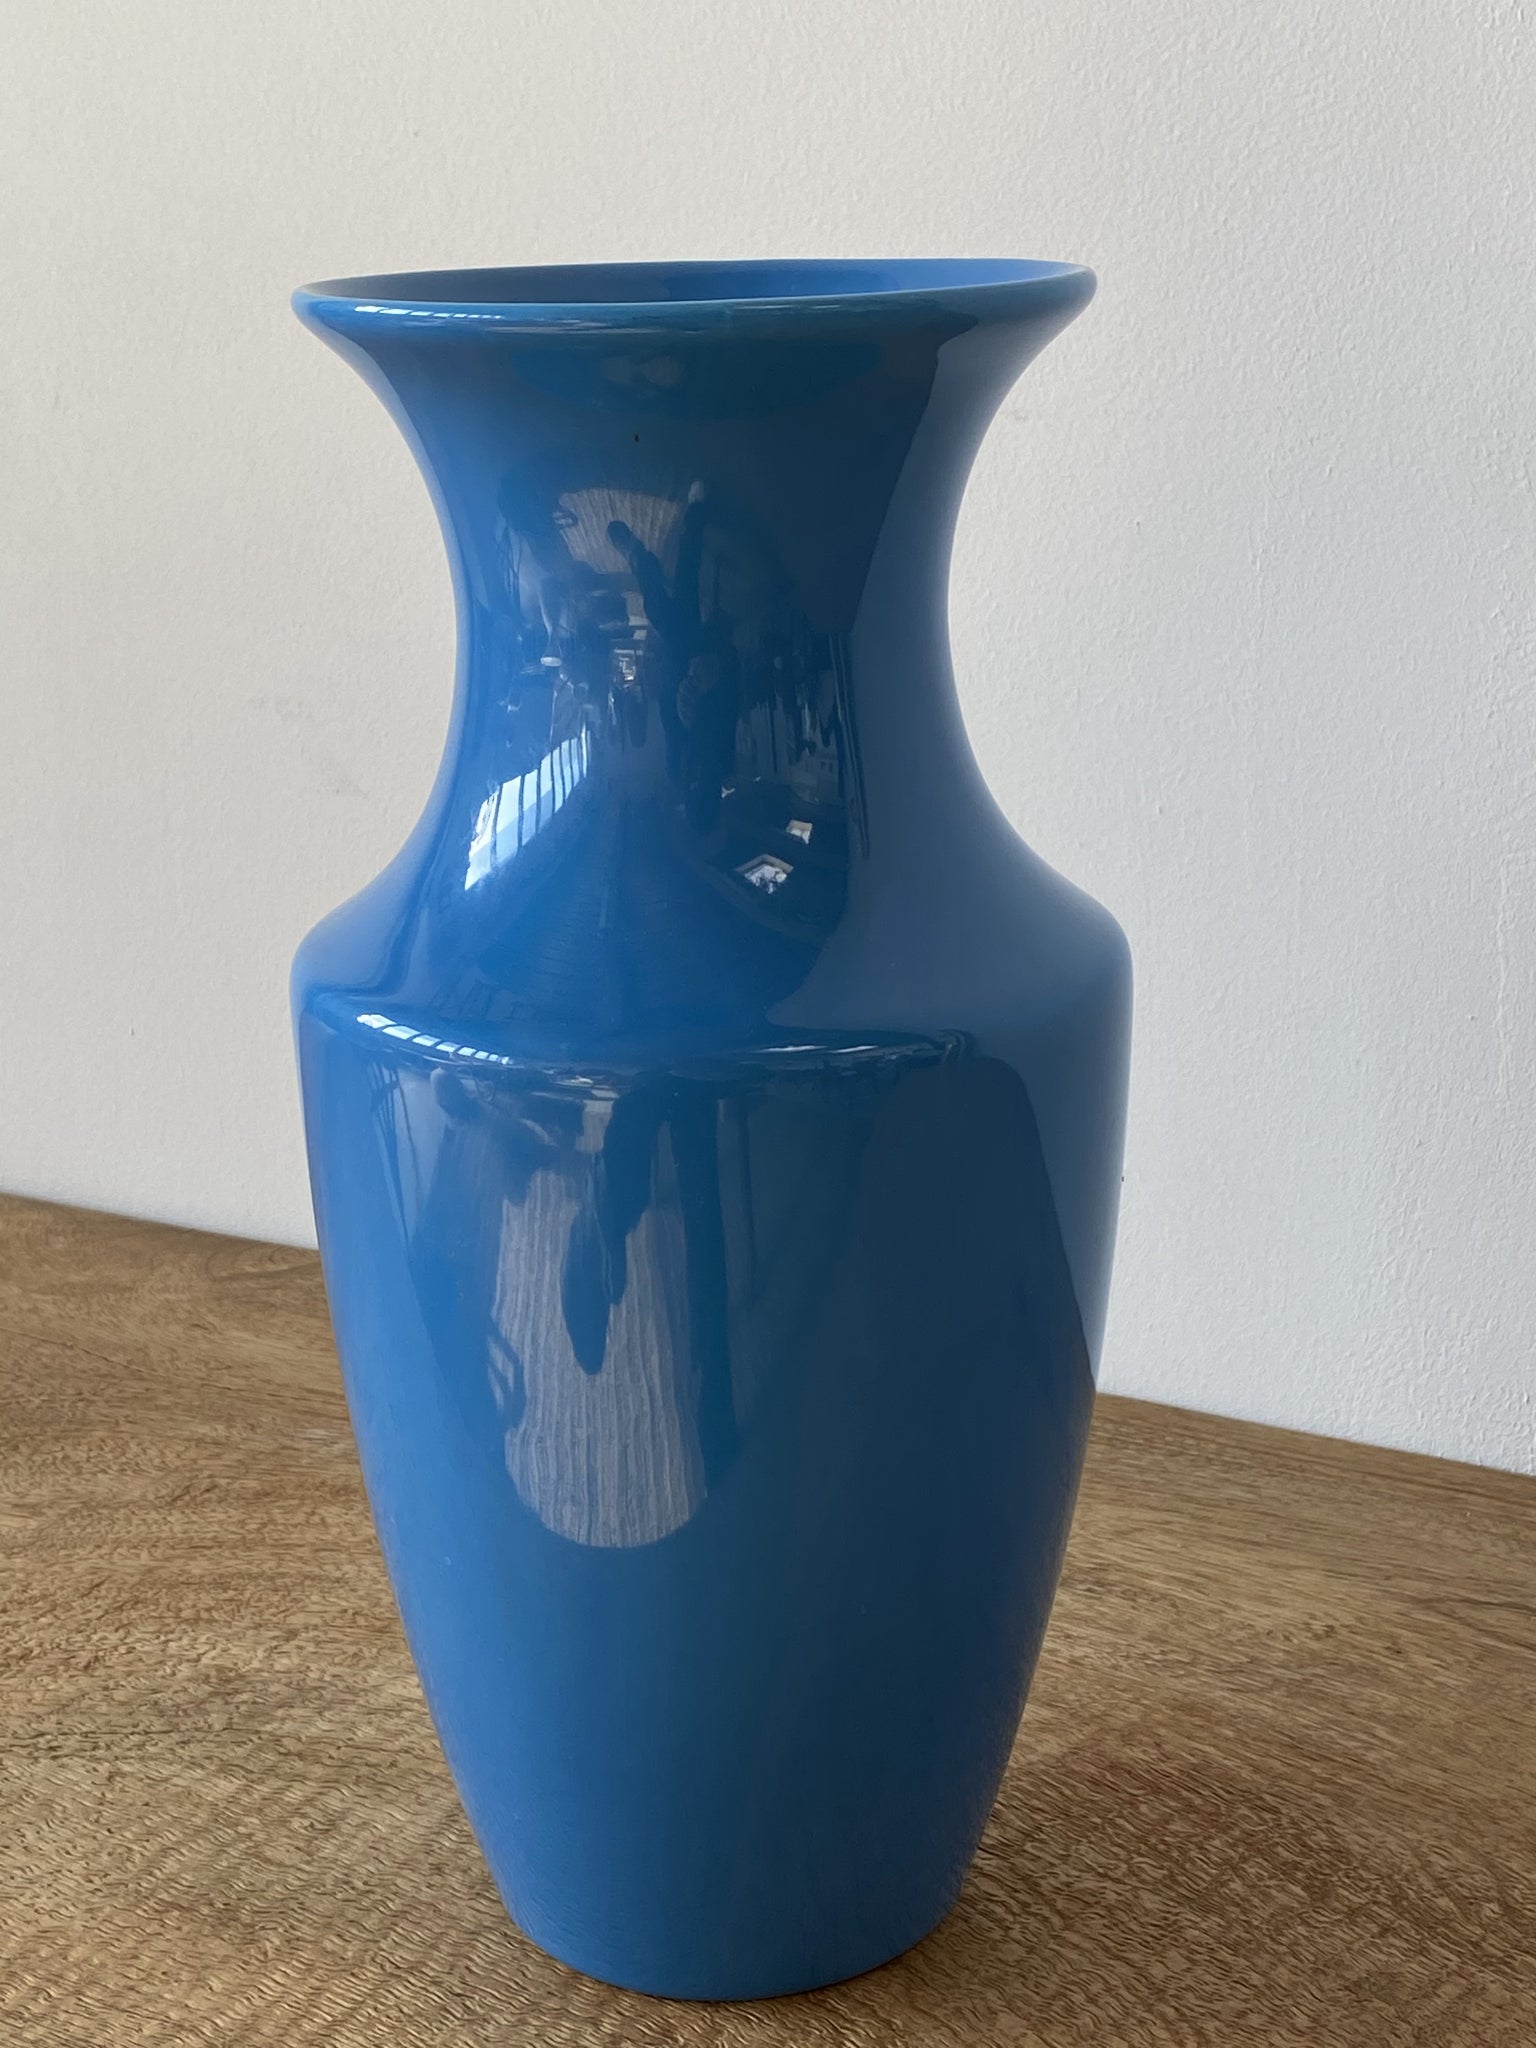 Grand vase bleu ciel